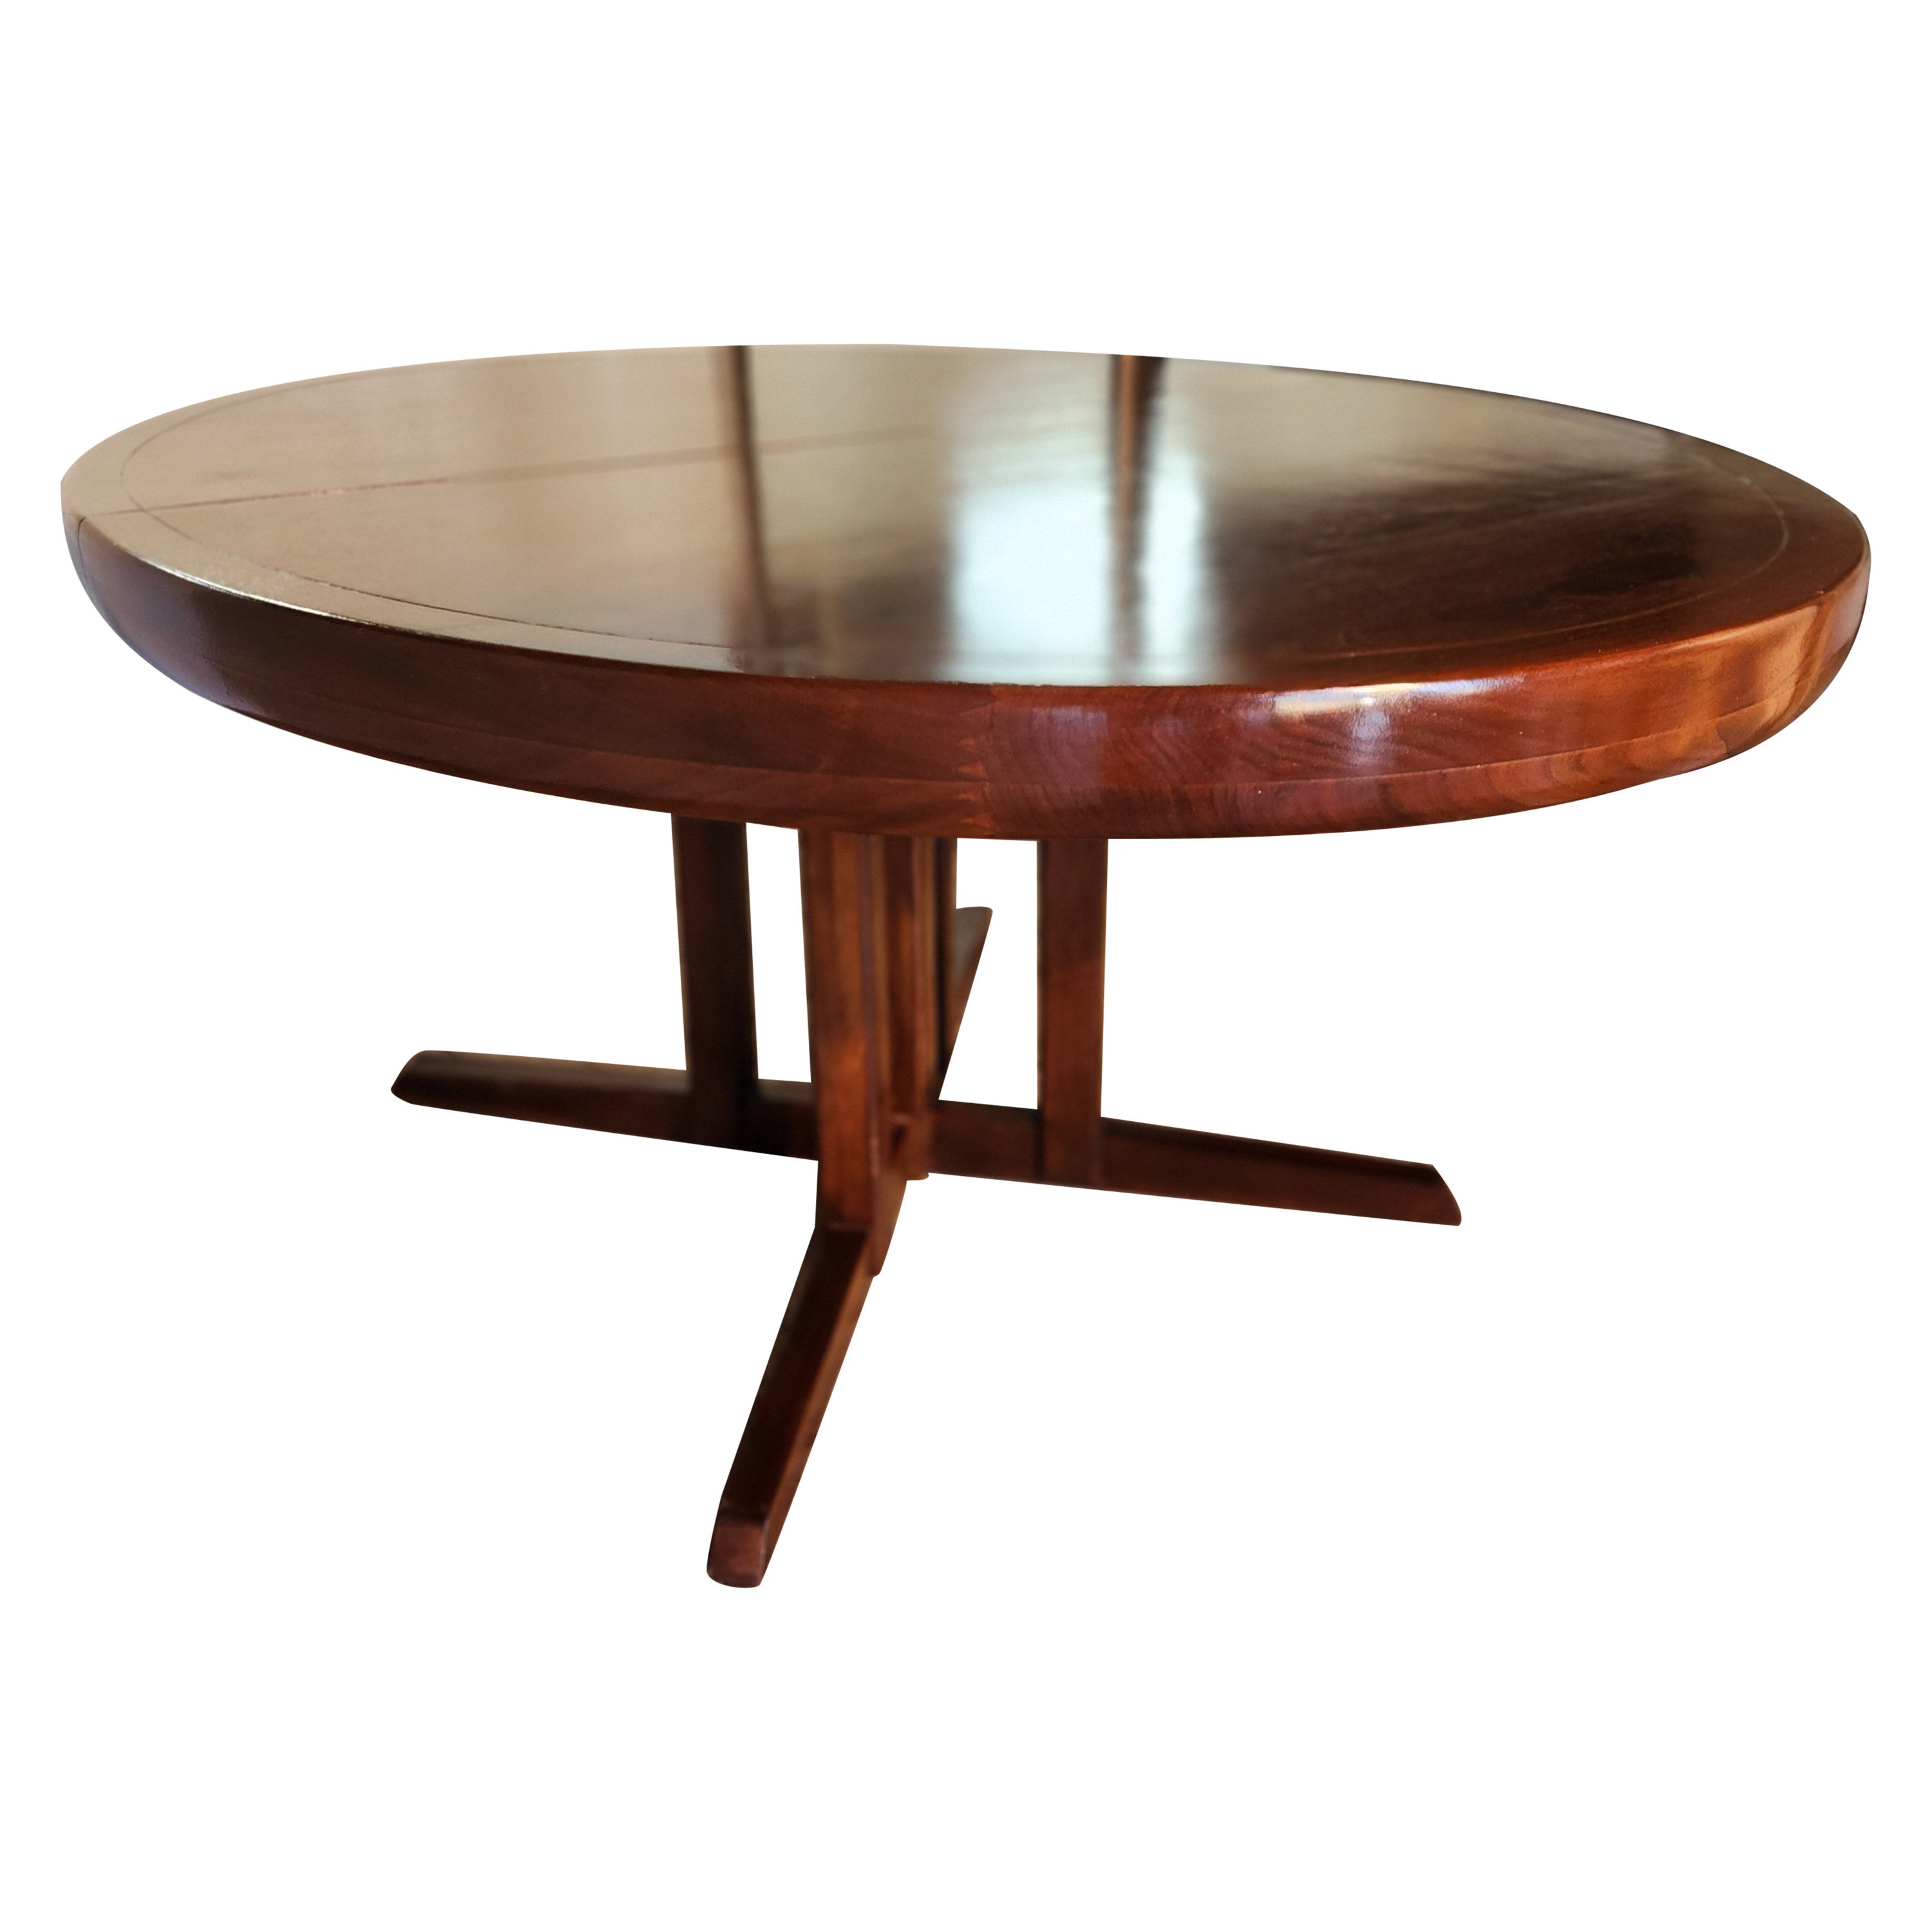 Table de salle à manger extensible en noyer de George Nakashima pour Widdicomb Furniture Company, datant de 1959.
Une ligne de placages assortis entourée d'un bord en noyer massif sculpté et joint à la main d'une profondeur de 3 pouces donne au